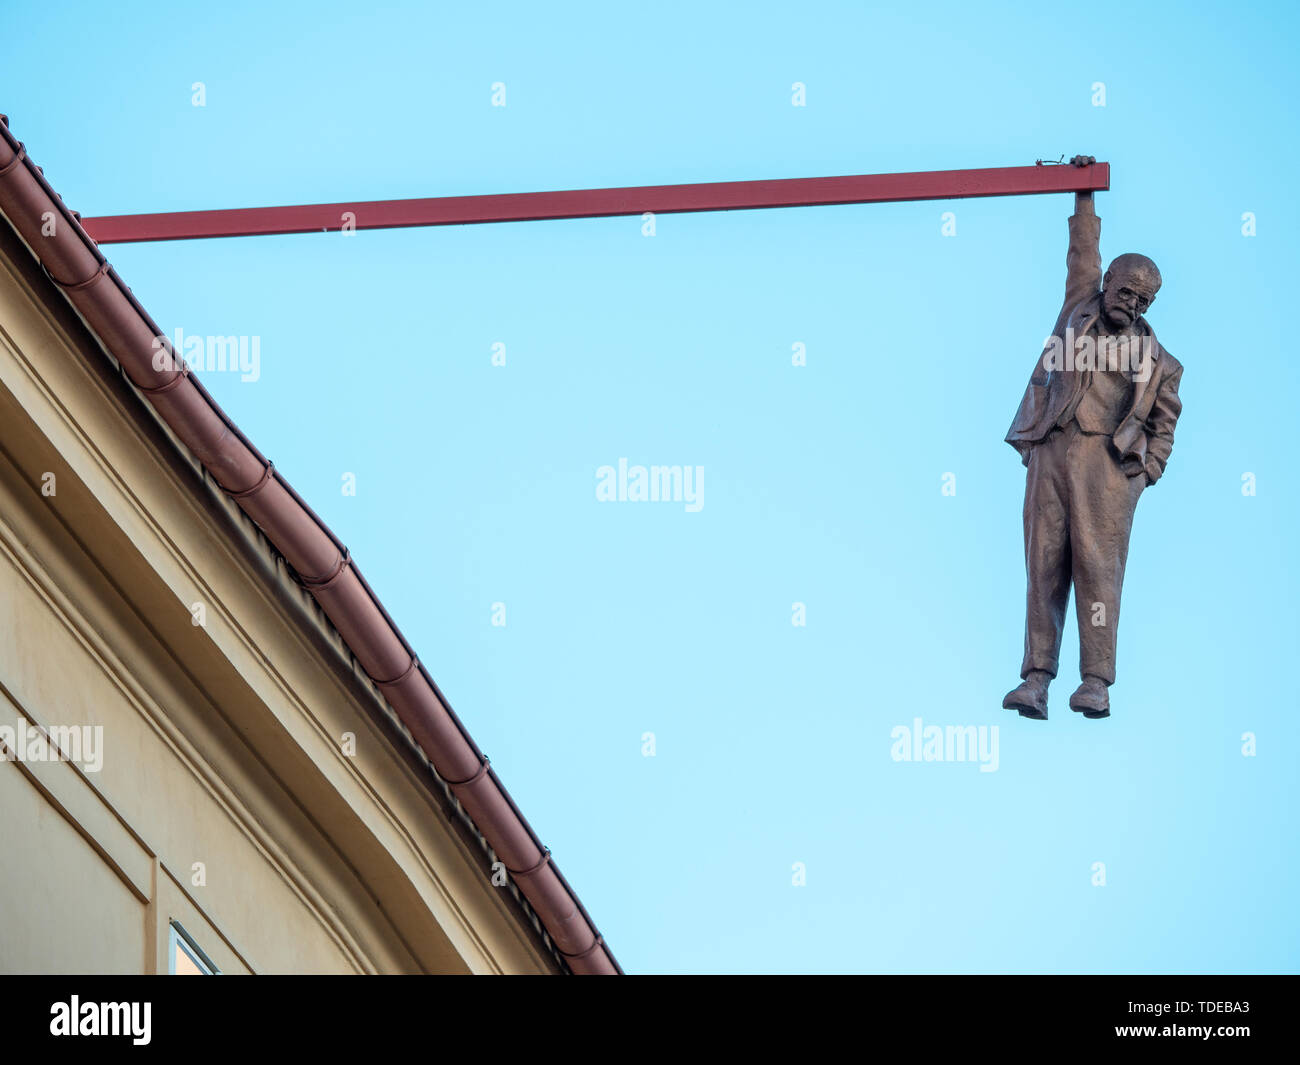 Praga, Repubblica Ceca - 8 Giugno 2019: uomo appeso fuori, una simpatica statua di Sigmund Freud realizzato da David Cerny nel 1996. Foto Stock